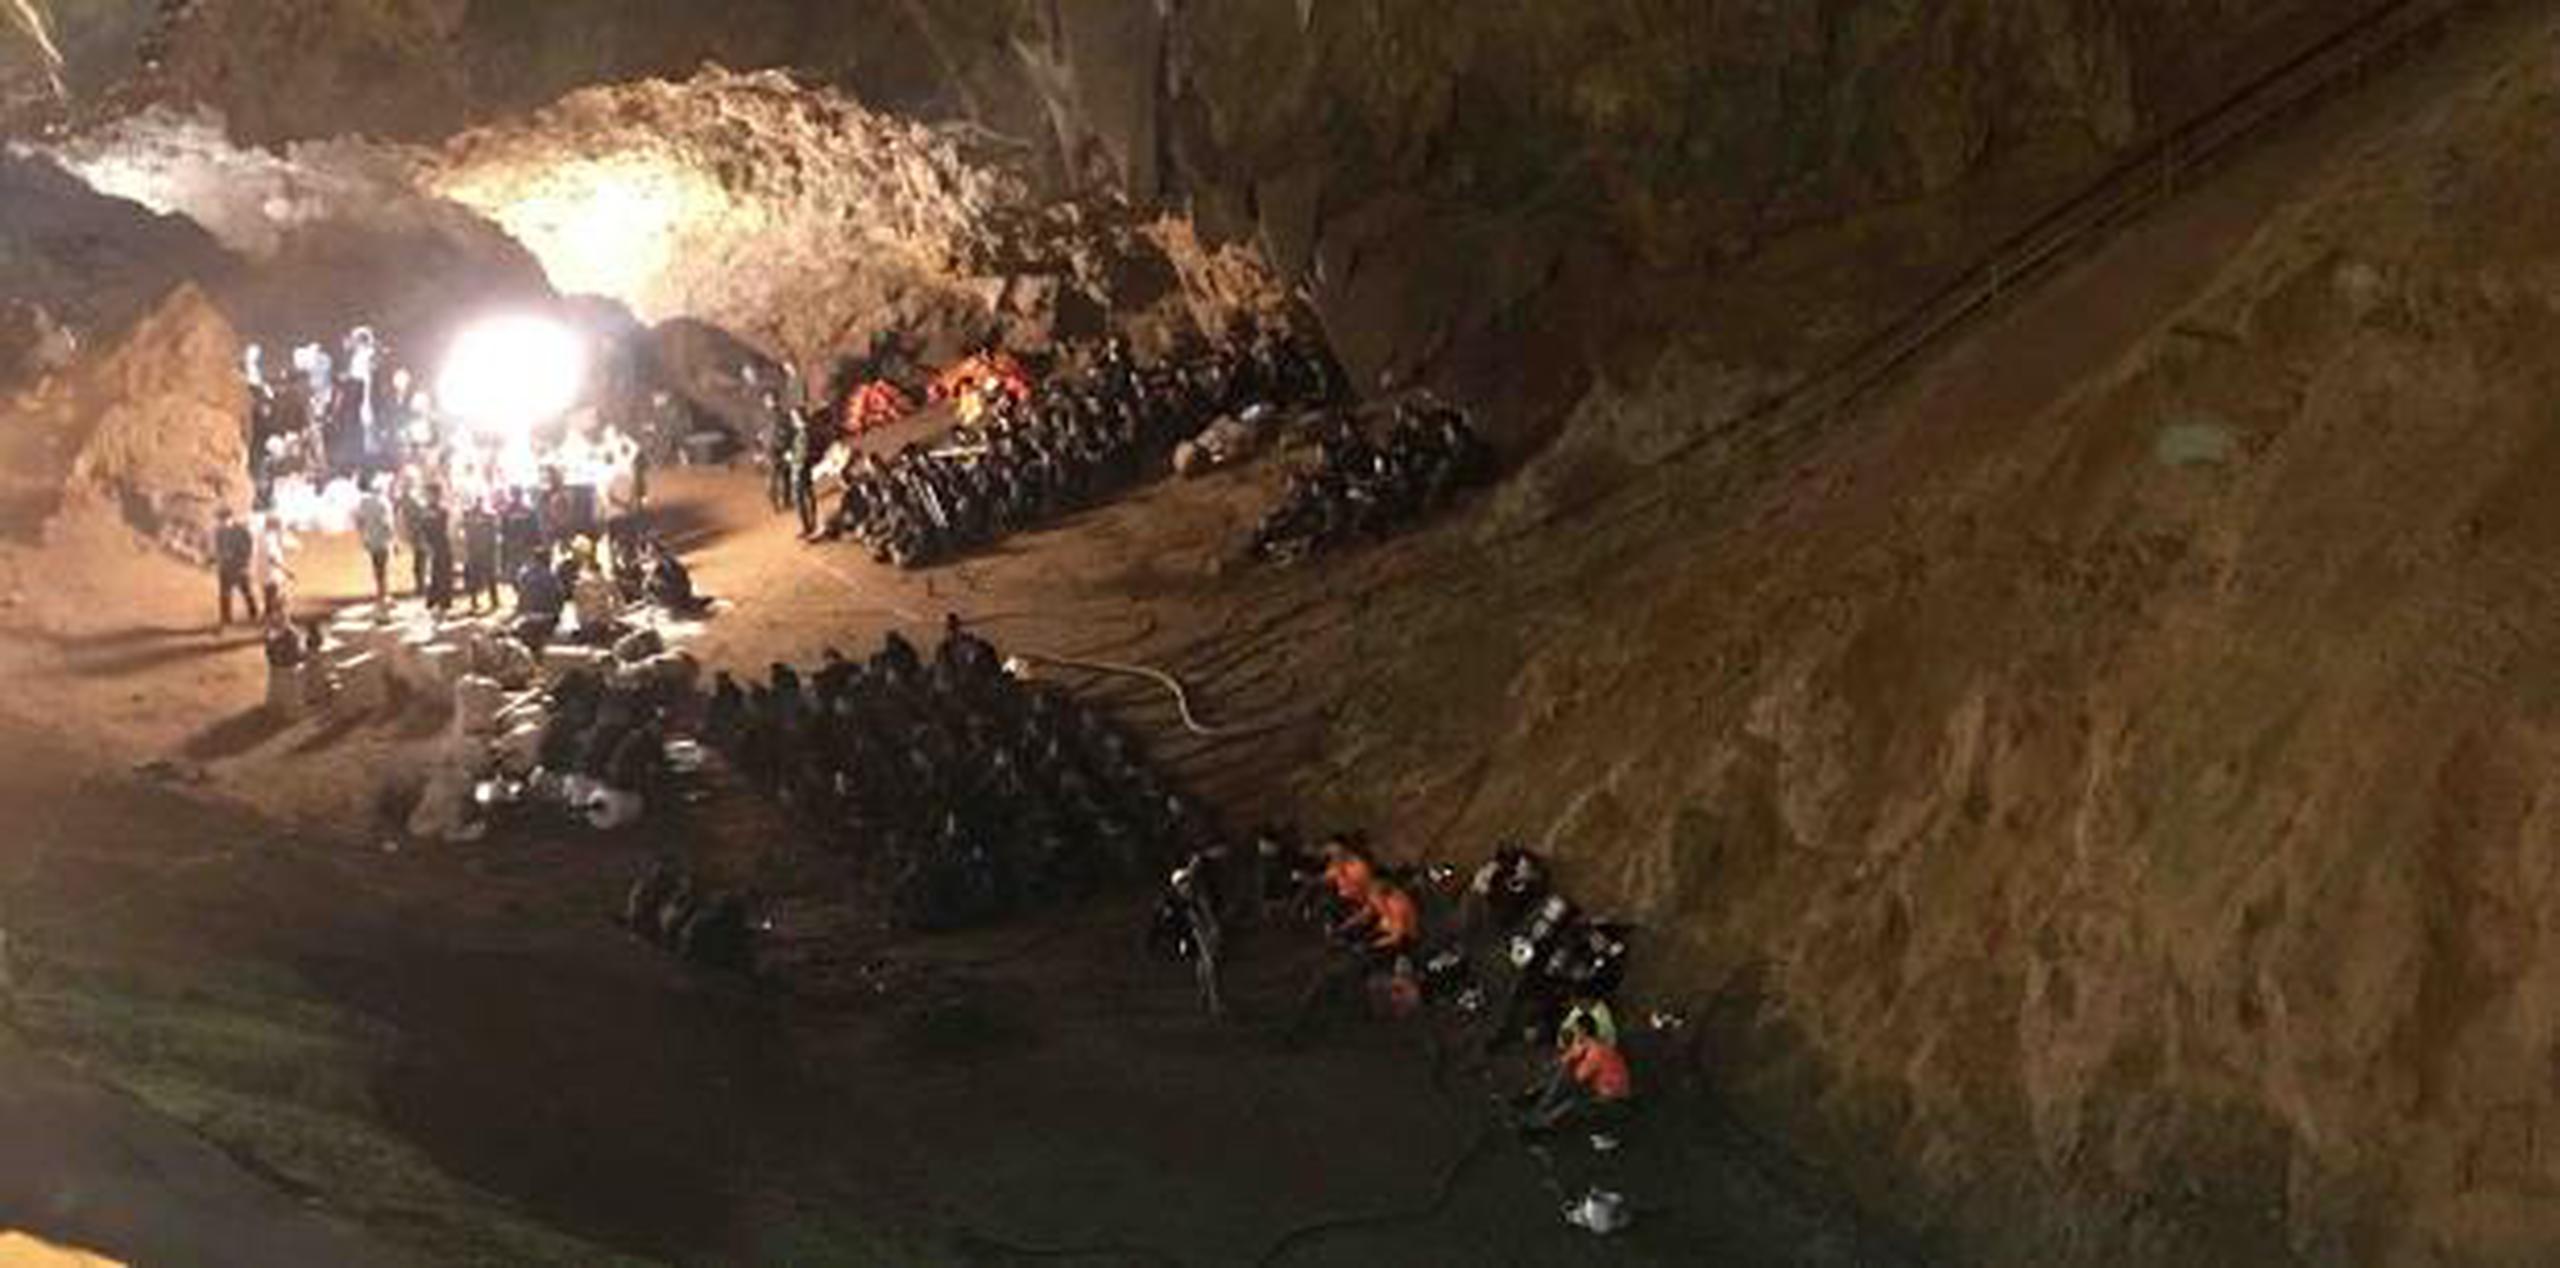 Los niños y su entrenador ingresaron al complejo de cavernas Tham Luang después de una práctica futbolística y rápidamente quedaron atrapados en el interior debido a una inundación. (AP / Tassanee Vejpongsa)